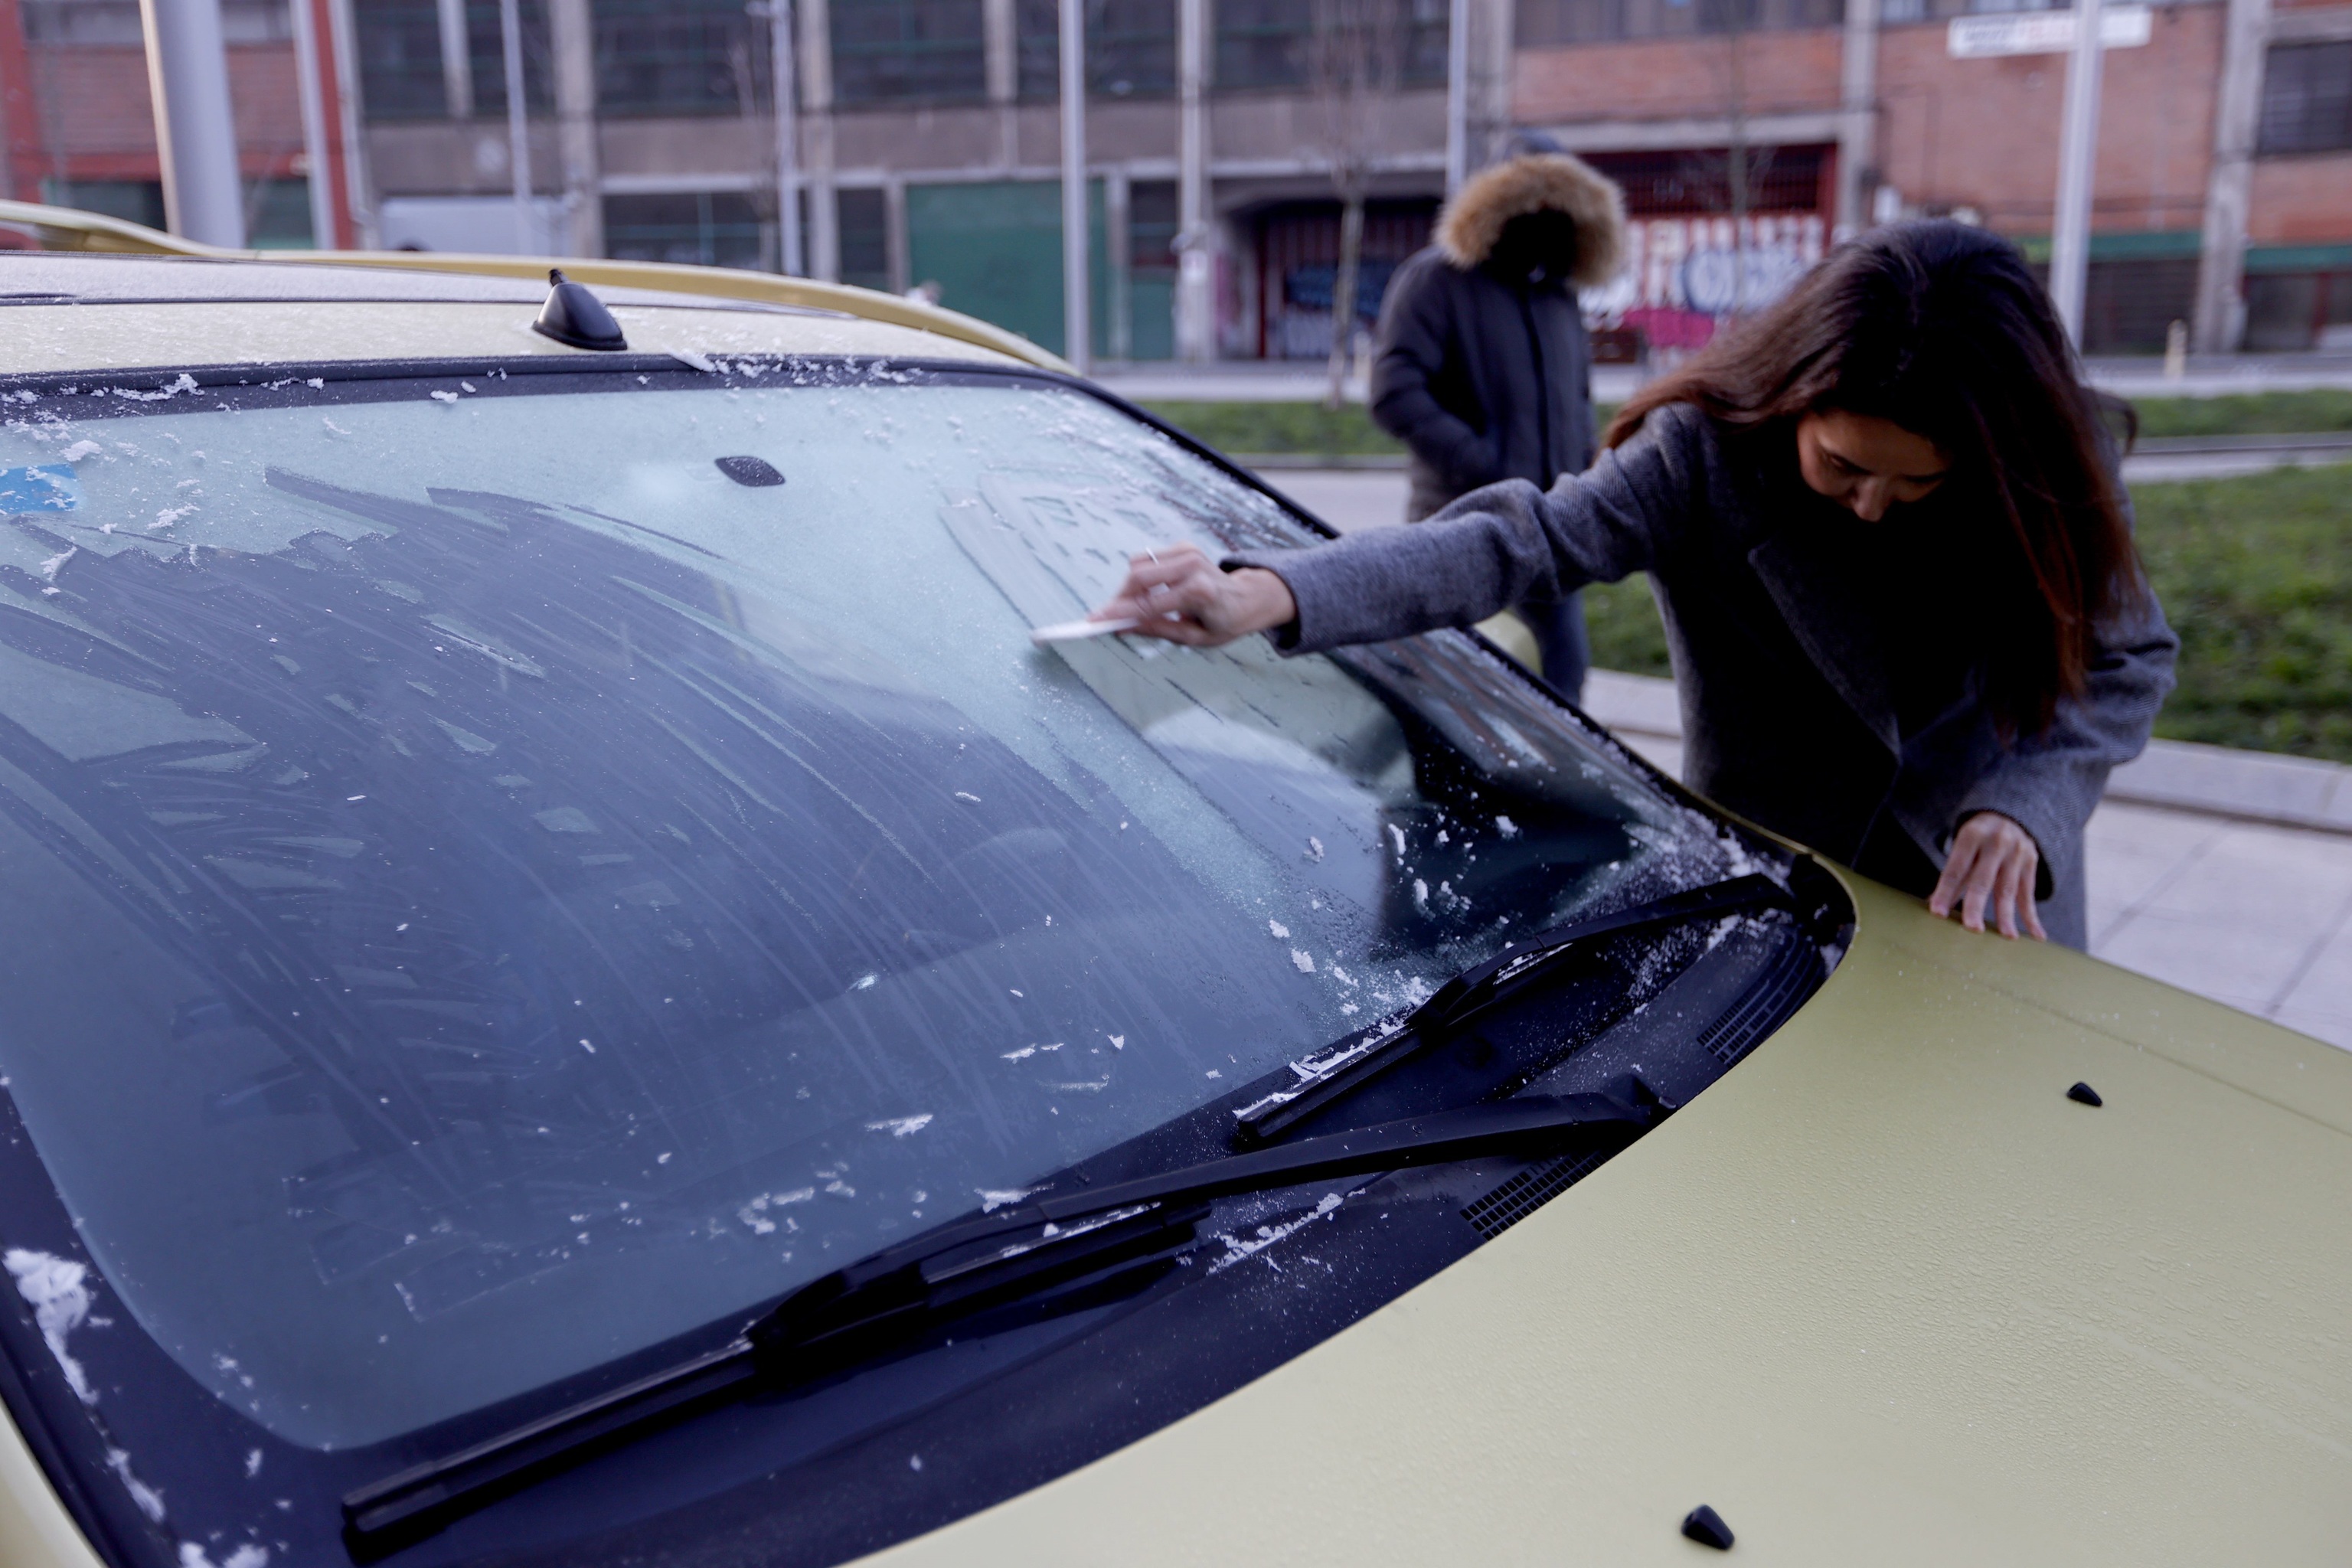 Una mujer retira el hielo de la luna del coche este martes en Bilbao, donde esta noche se han registrado fuertes heladas como consecuencia de las bajas temperaturas.EFE